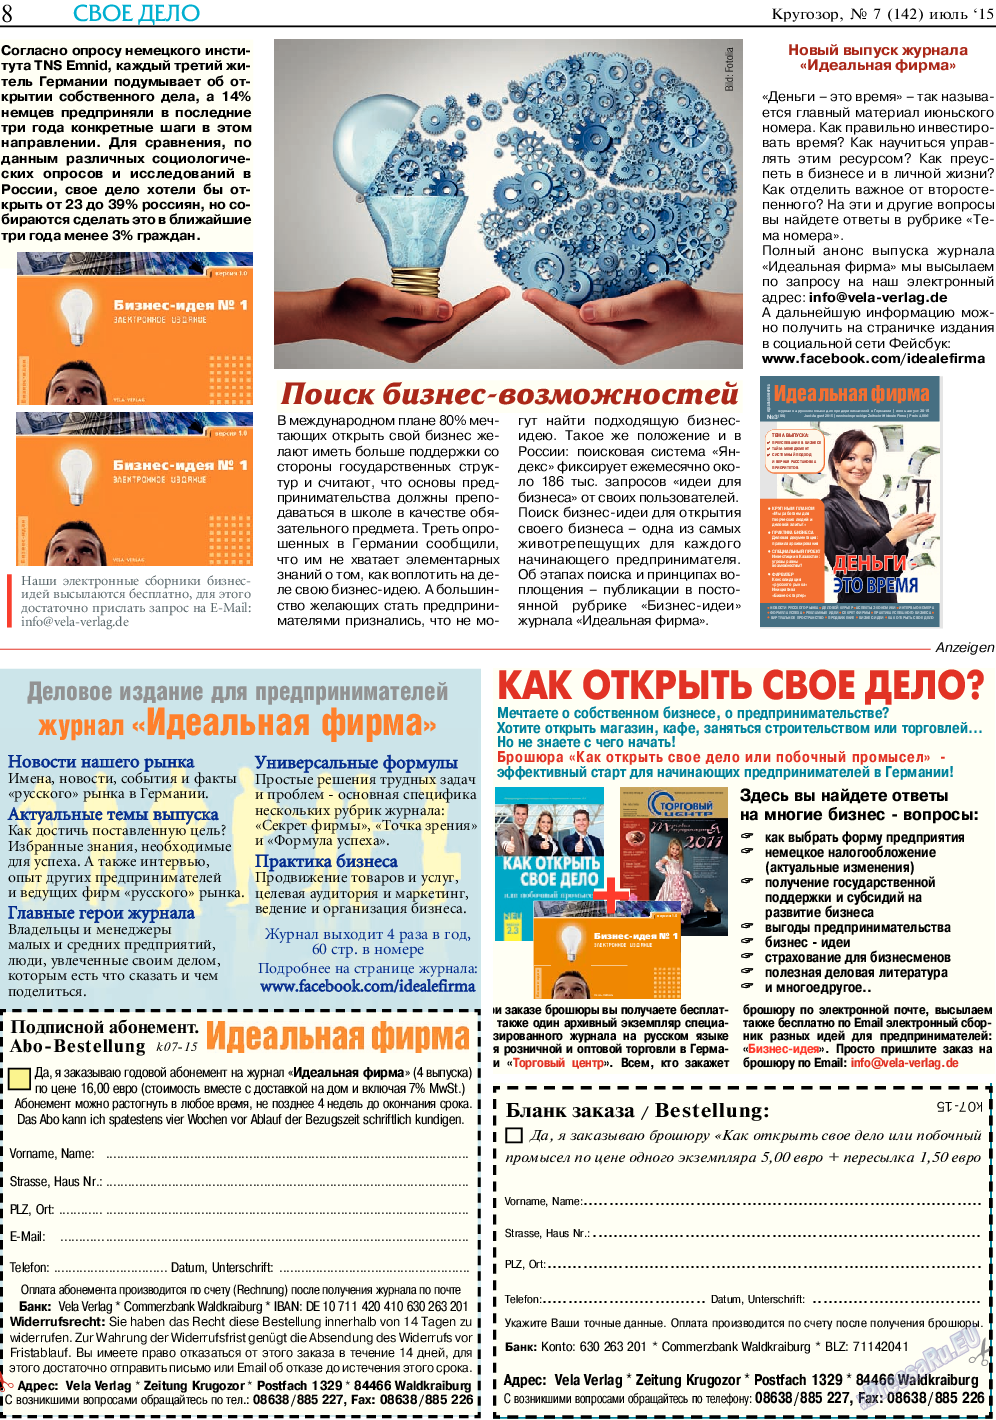 Кругозор, газета. 2015 №7 стр.8